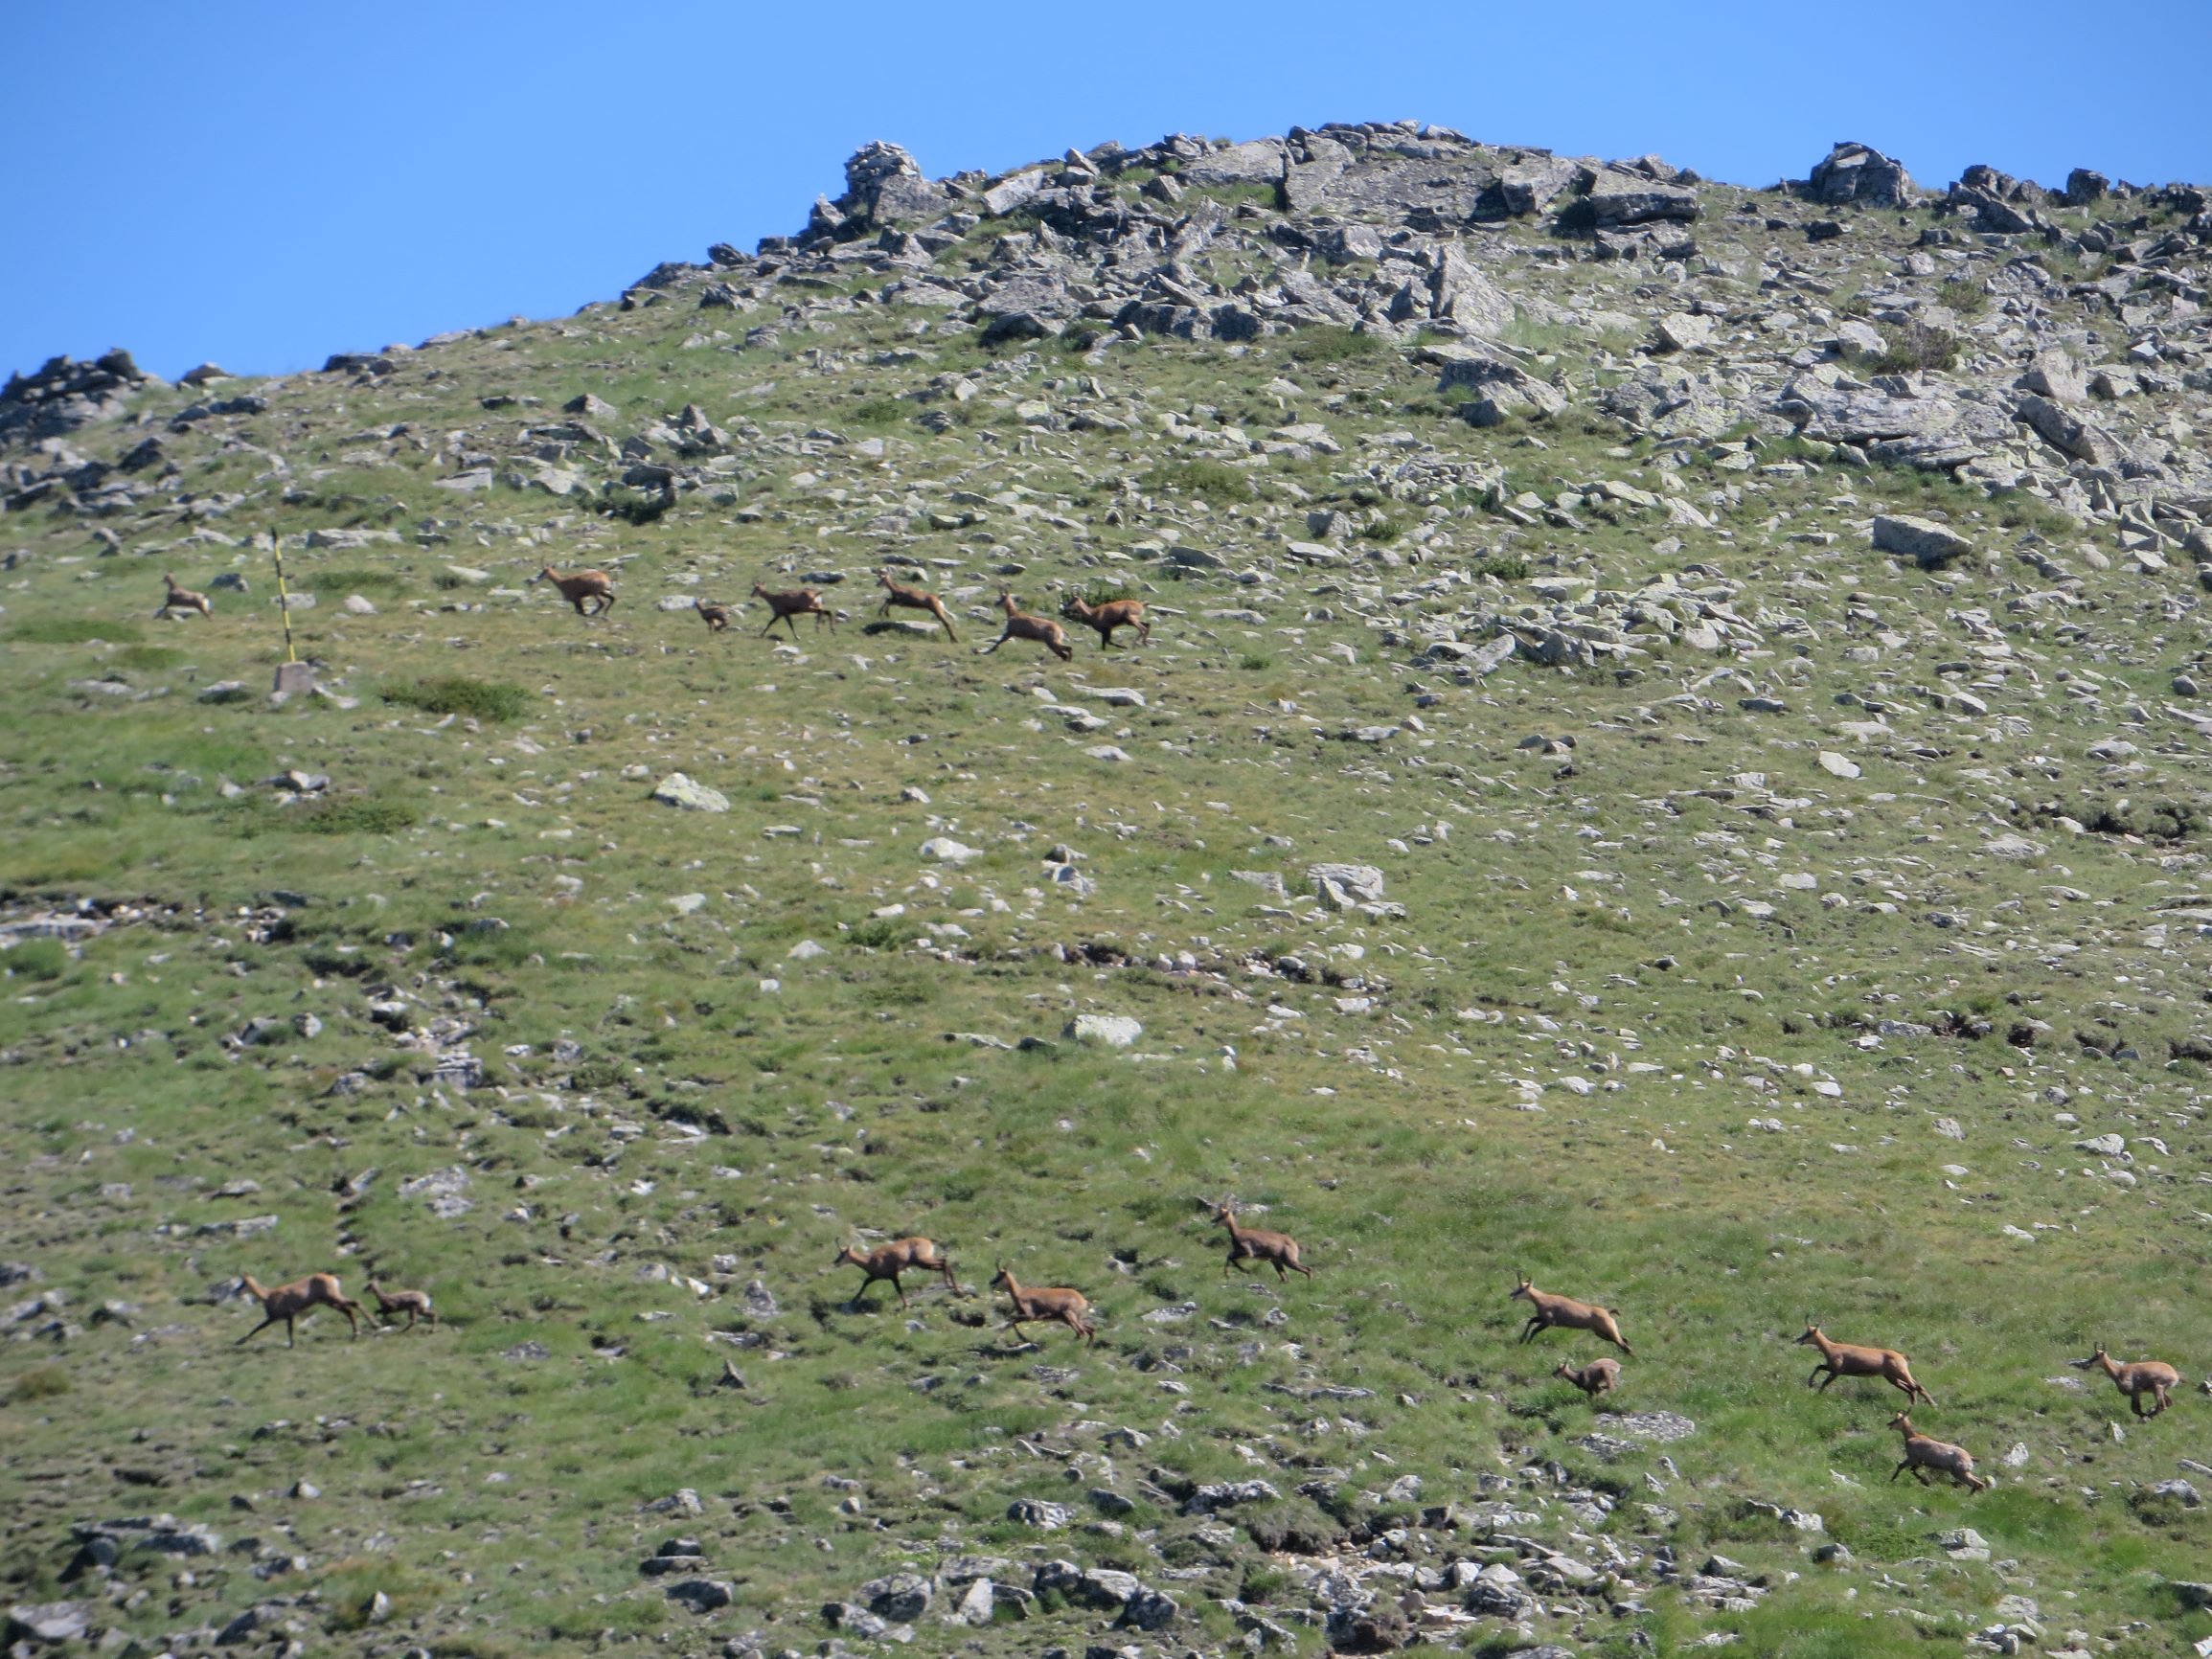 A herd of wild goats